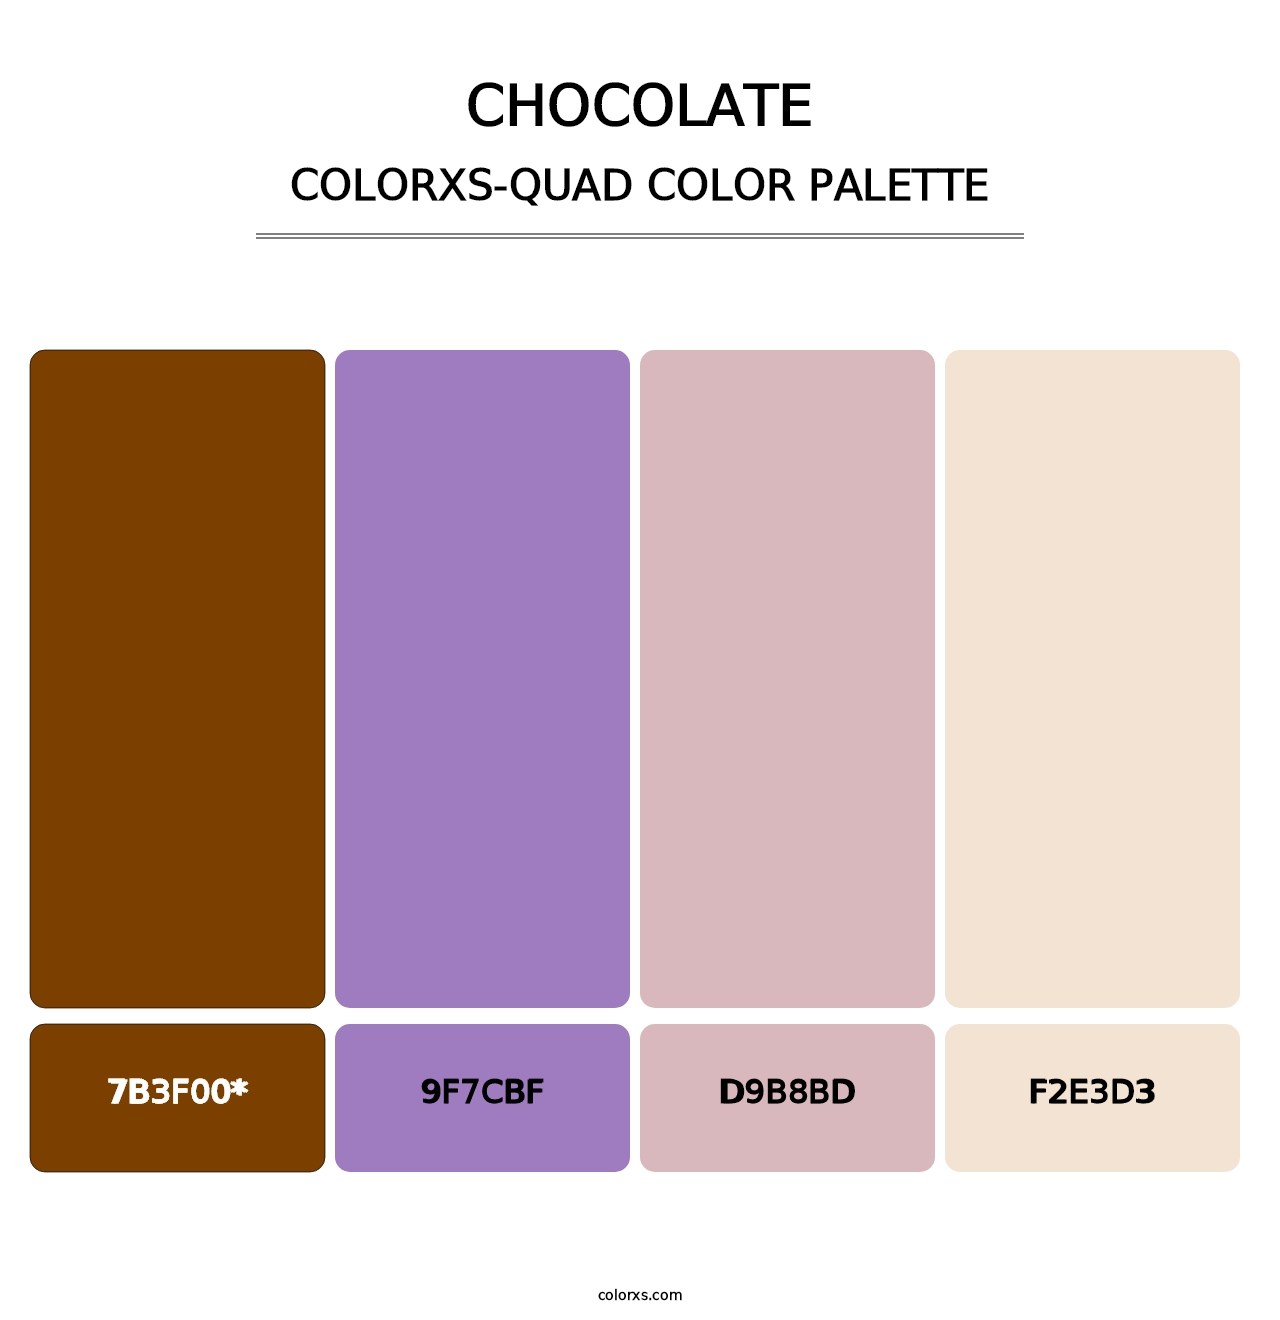 Chocolate - Colorxs Quad Palette